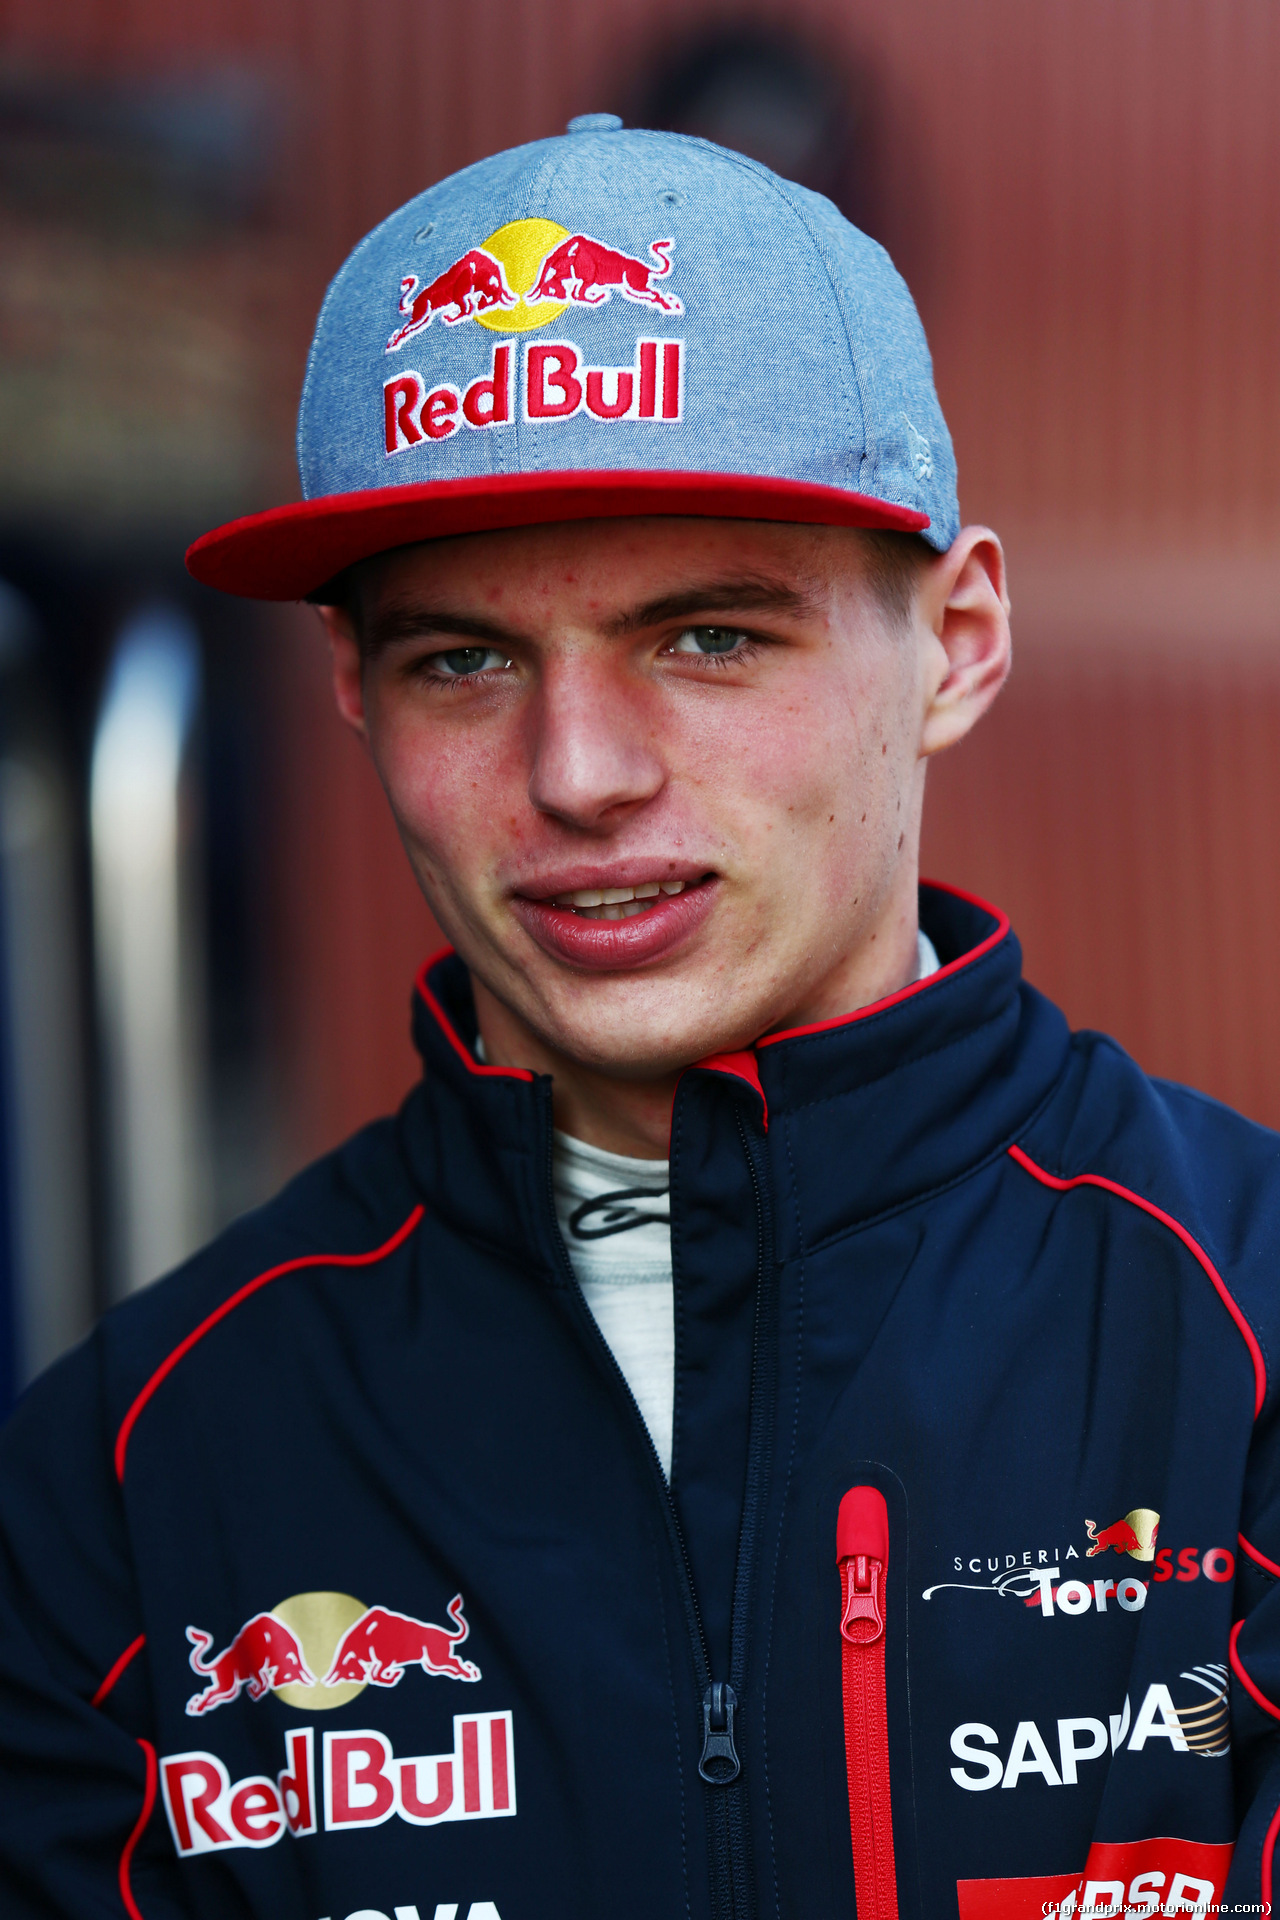 TEST F1 BARCELLONA 19 FEBBRAIO, Max Verstappen (NLD) Scuderia Toro Rosso.
19.02.2015.